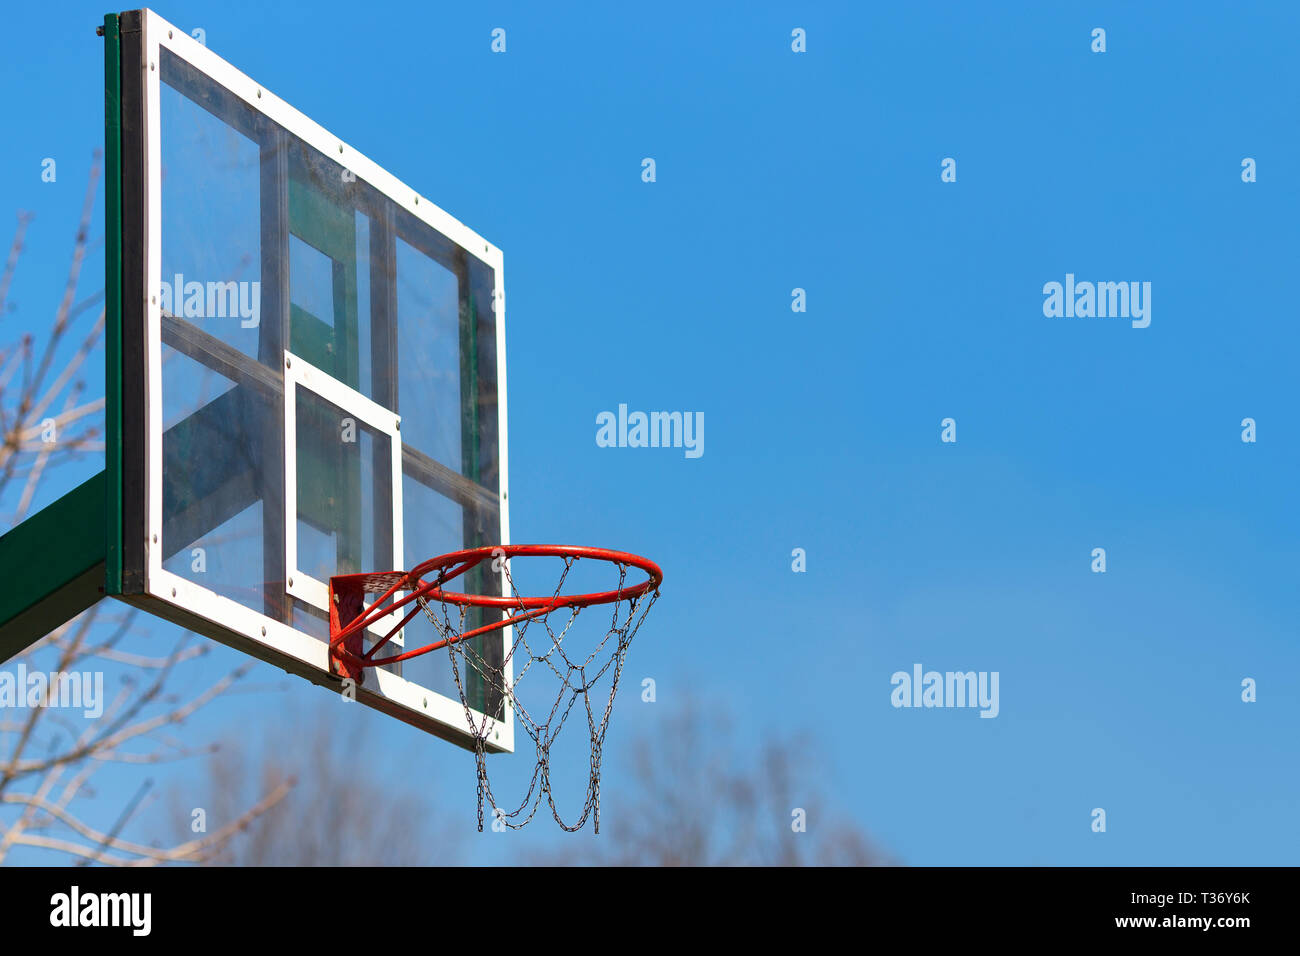 Closeup Basketballkorb outdoor auf blauen Himmel Hintergrund Stockfoto